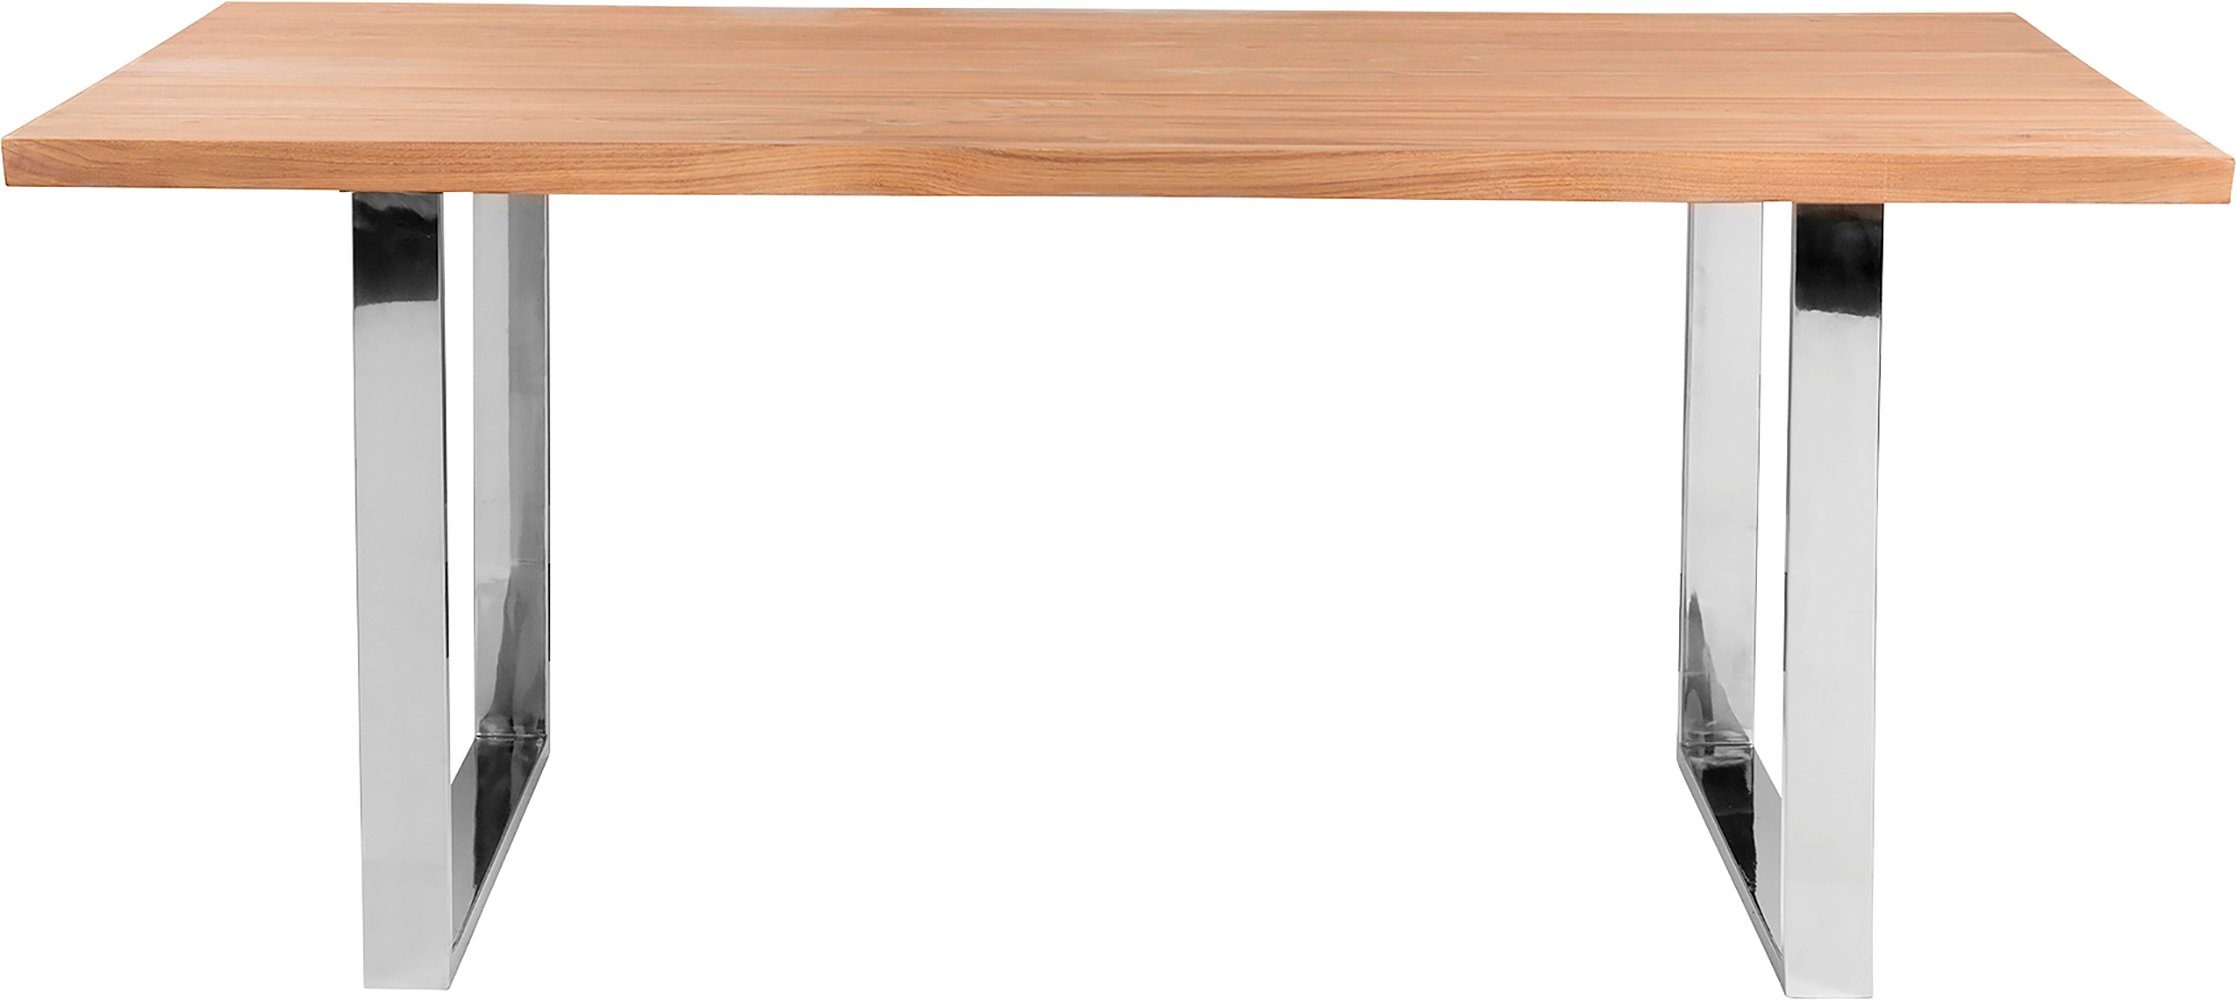 Fink Esstisch, Mit Tischplatte, geölt weiß seitlich geschwungener massive Form